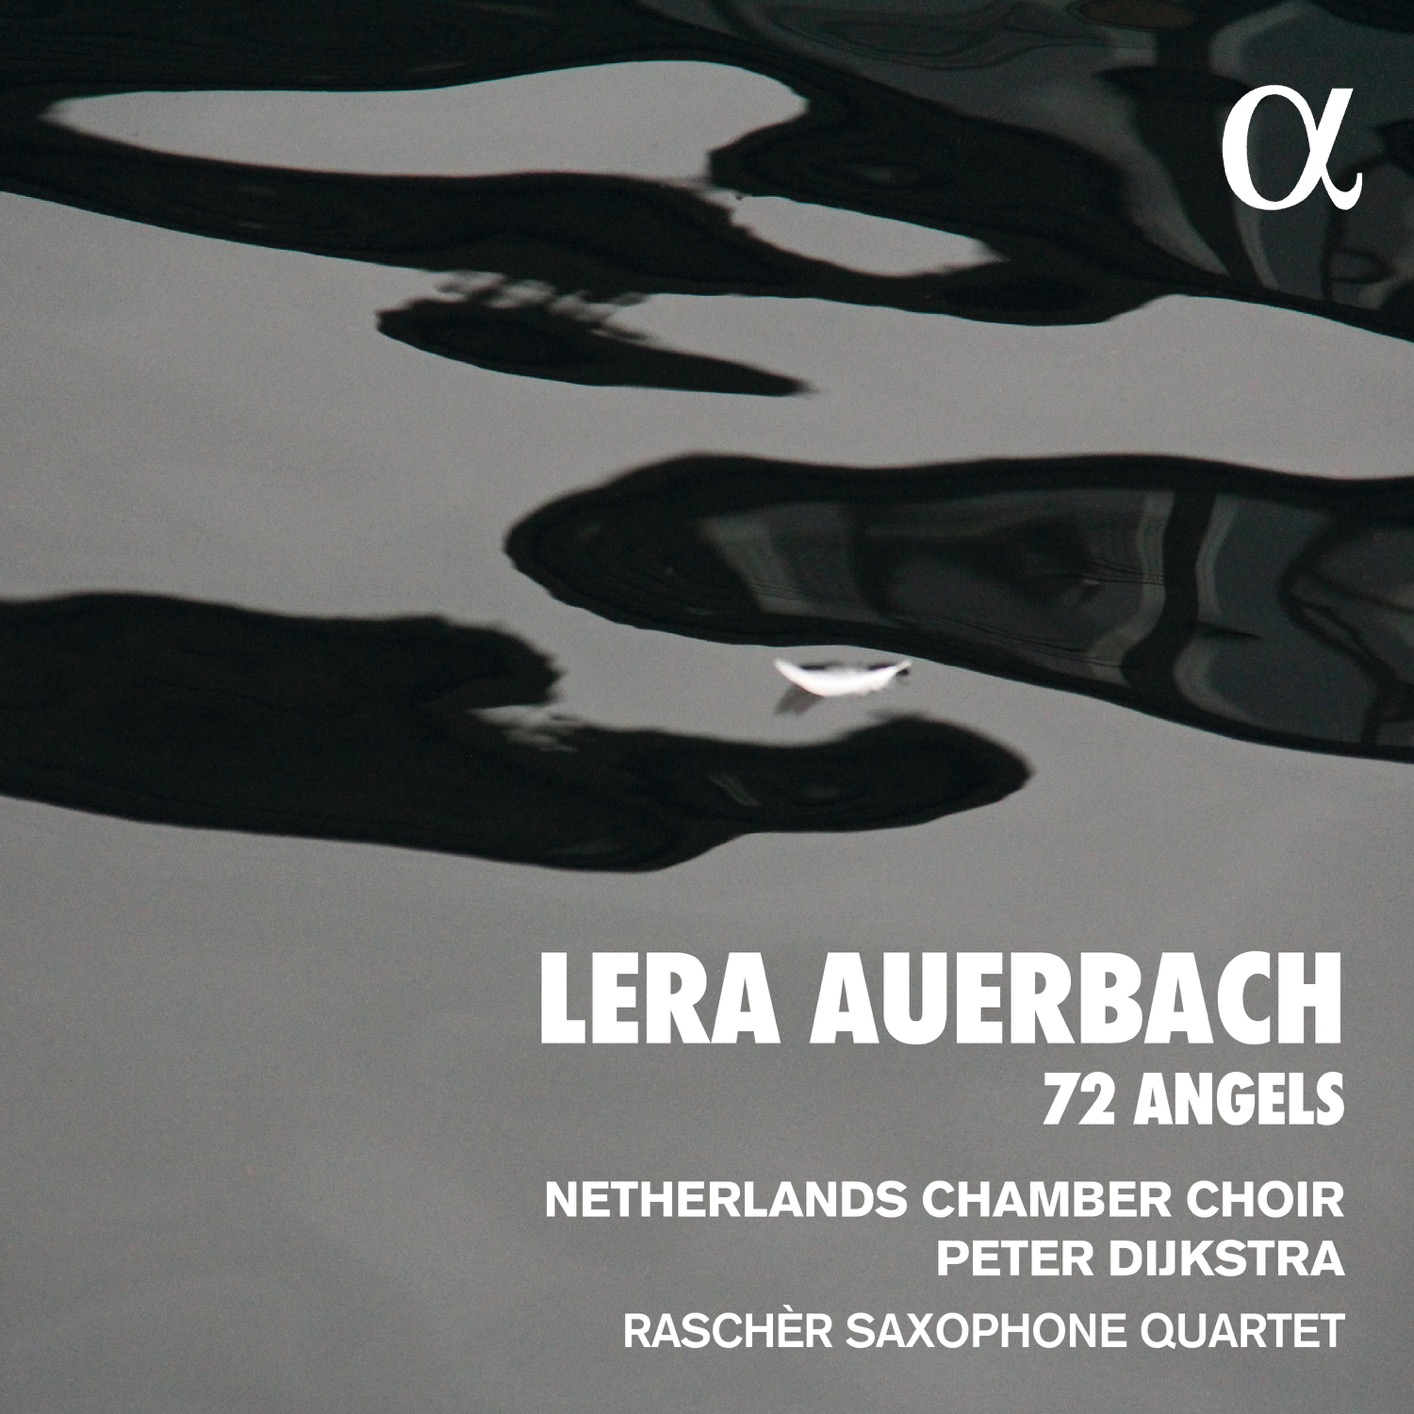 Netherlands Chamber Choir, Rascher Saxophone Quartet & Peter Dijkstra - Auerbach: 72 Angels (2020) [FLAC 24bit/48kHz]